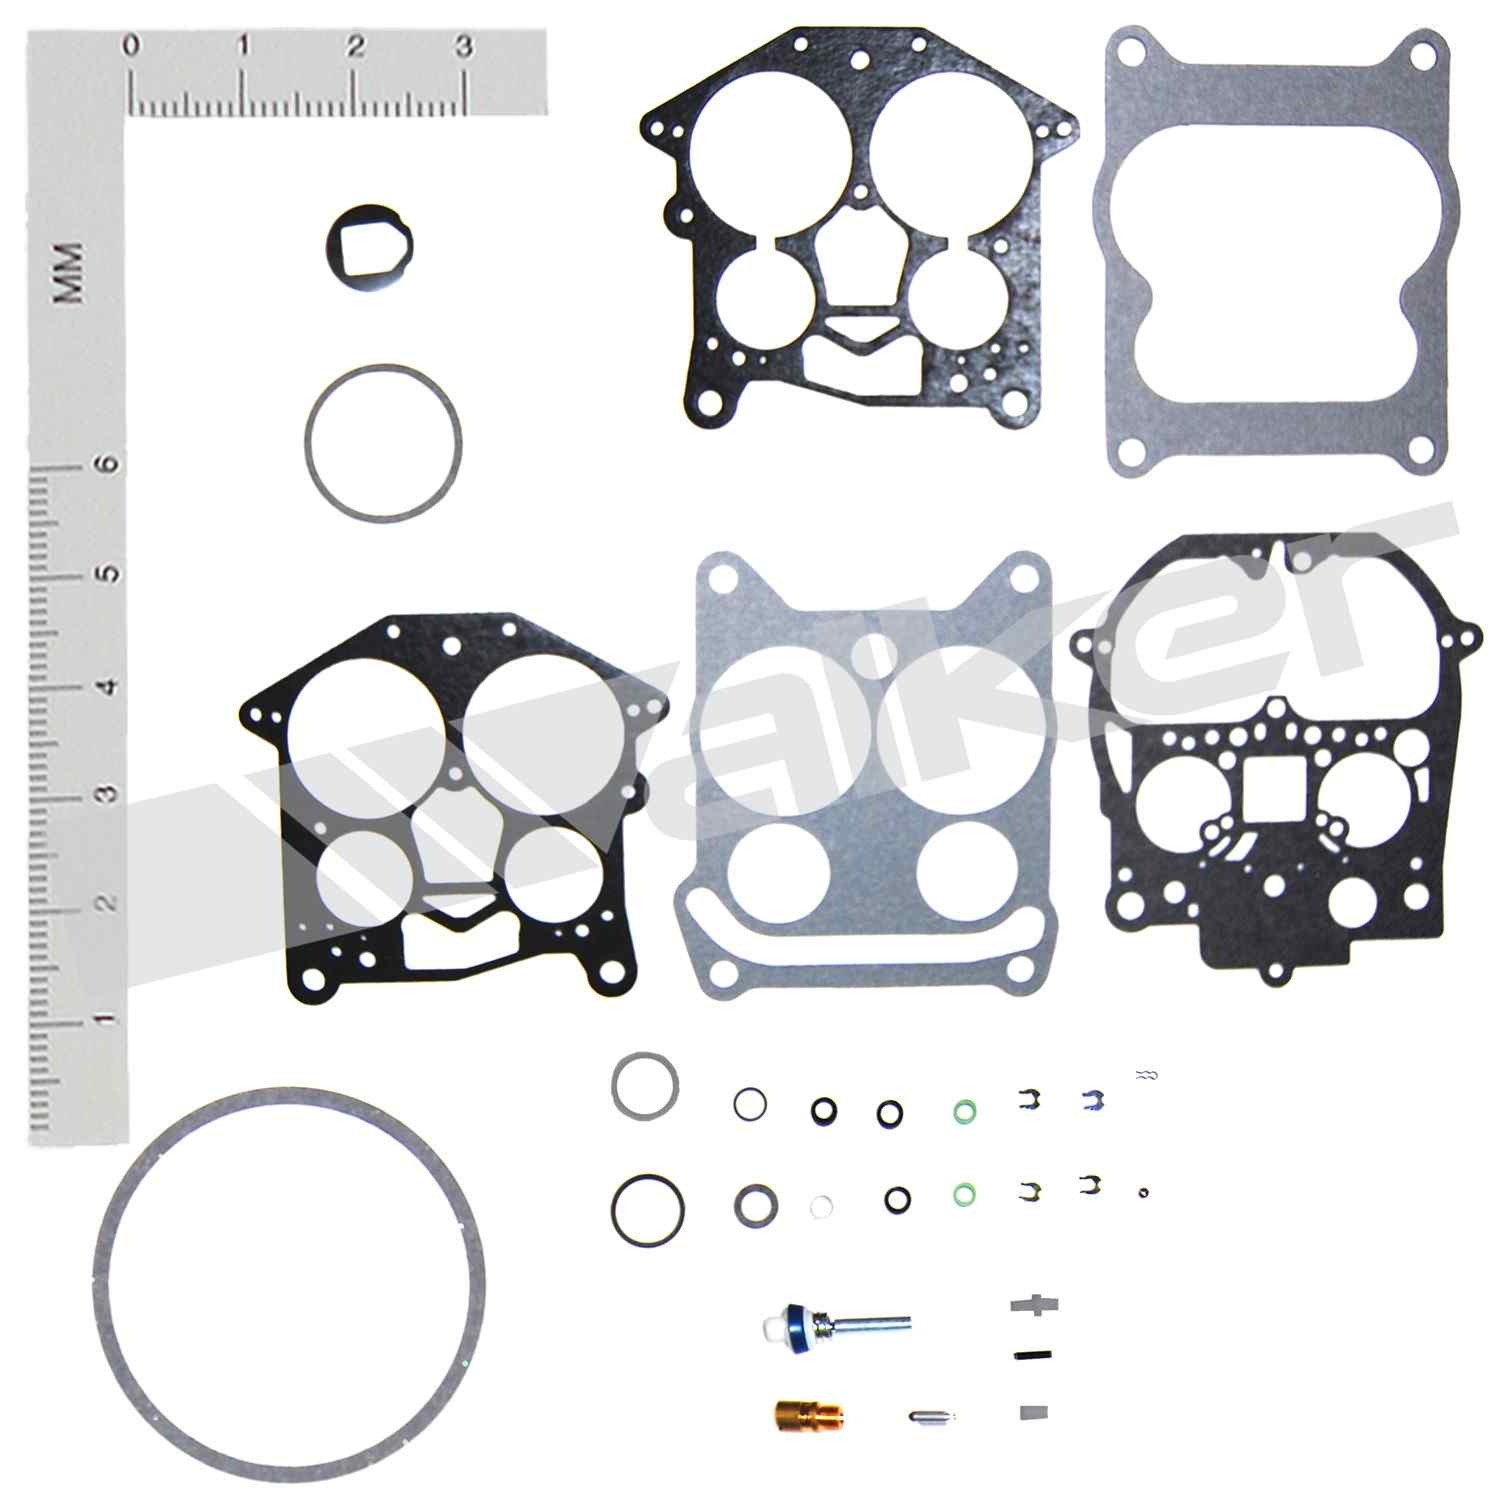 Carburetor Repair Kits - Walker Products